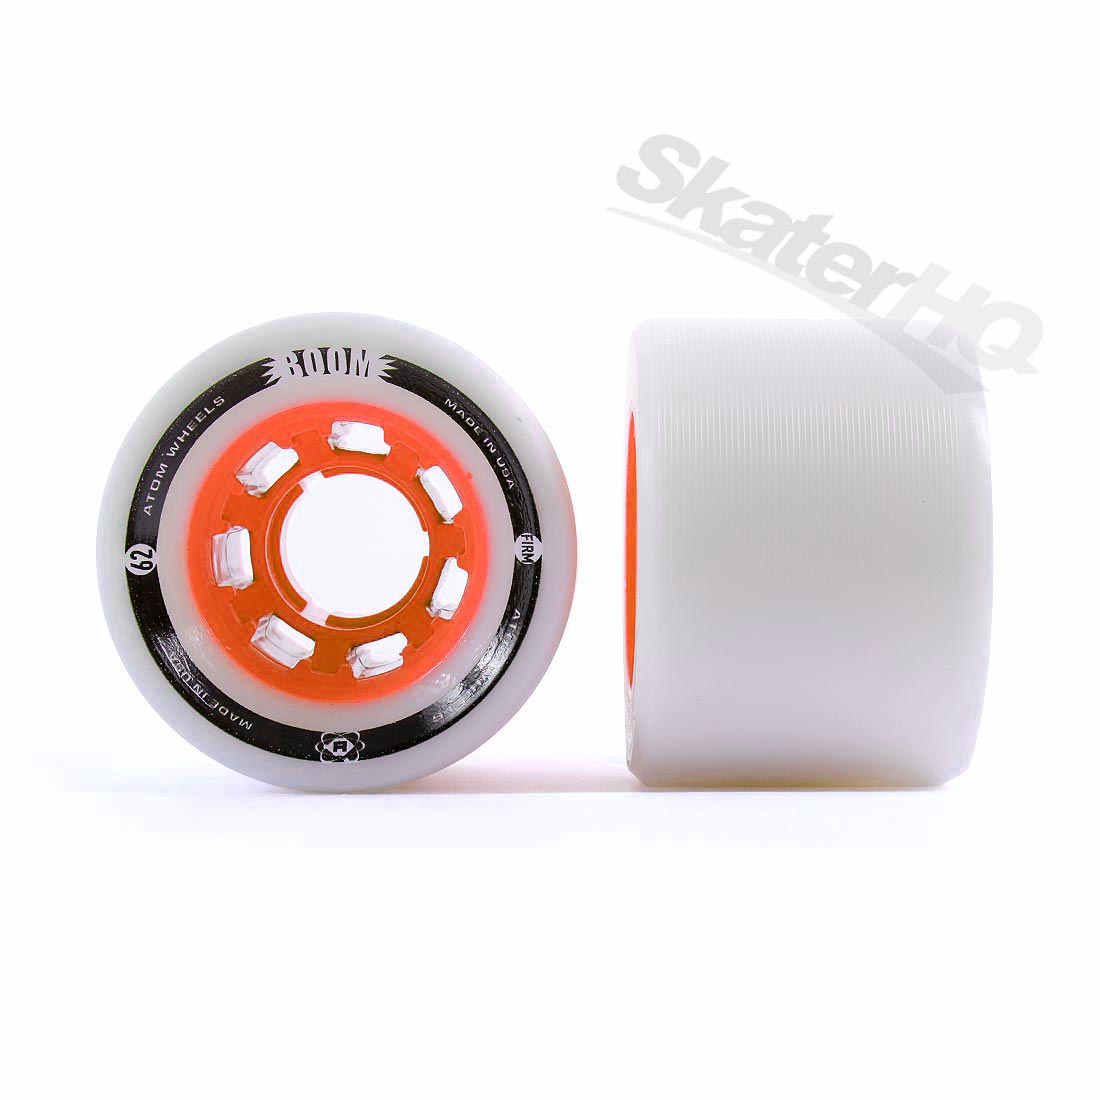 Atom Boom Quad Hybrid XFIRM White Orange 62mm 44mm 4pk Roller Skate Wheels